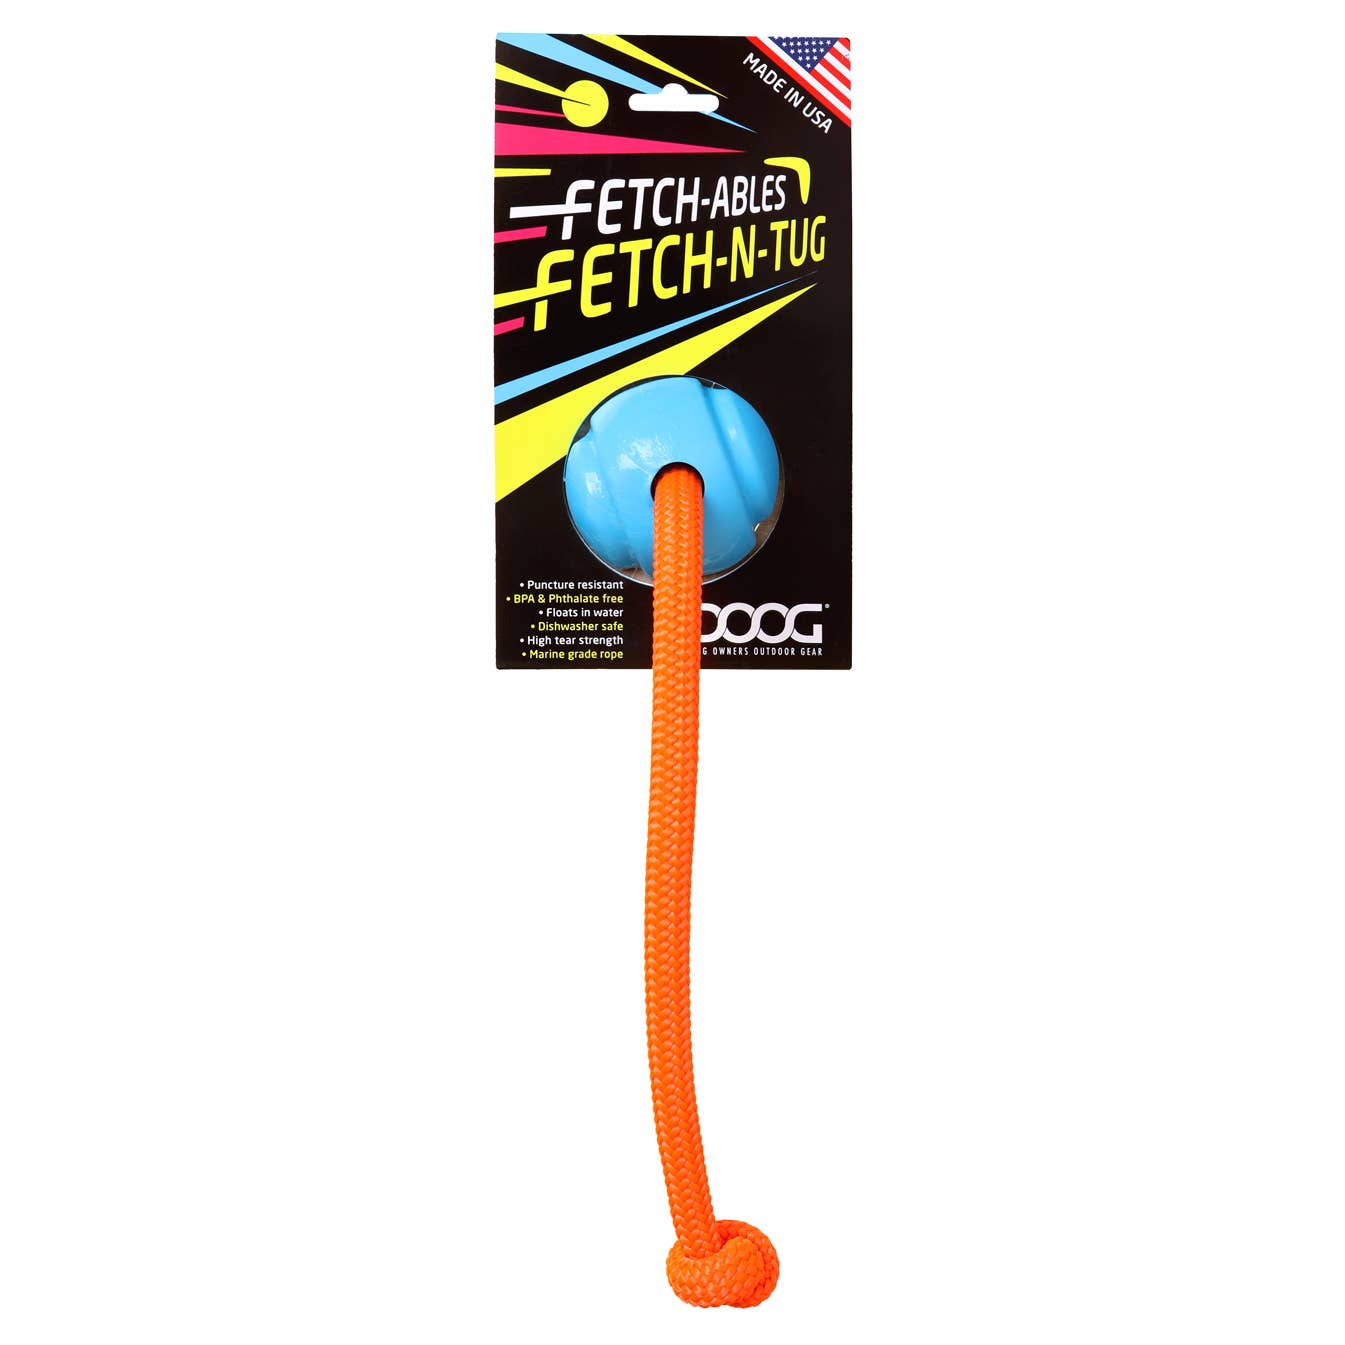 DOOG Fetchables - Fetch-N-Tug Ball & Rope